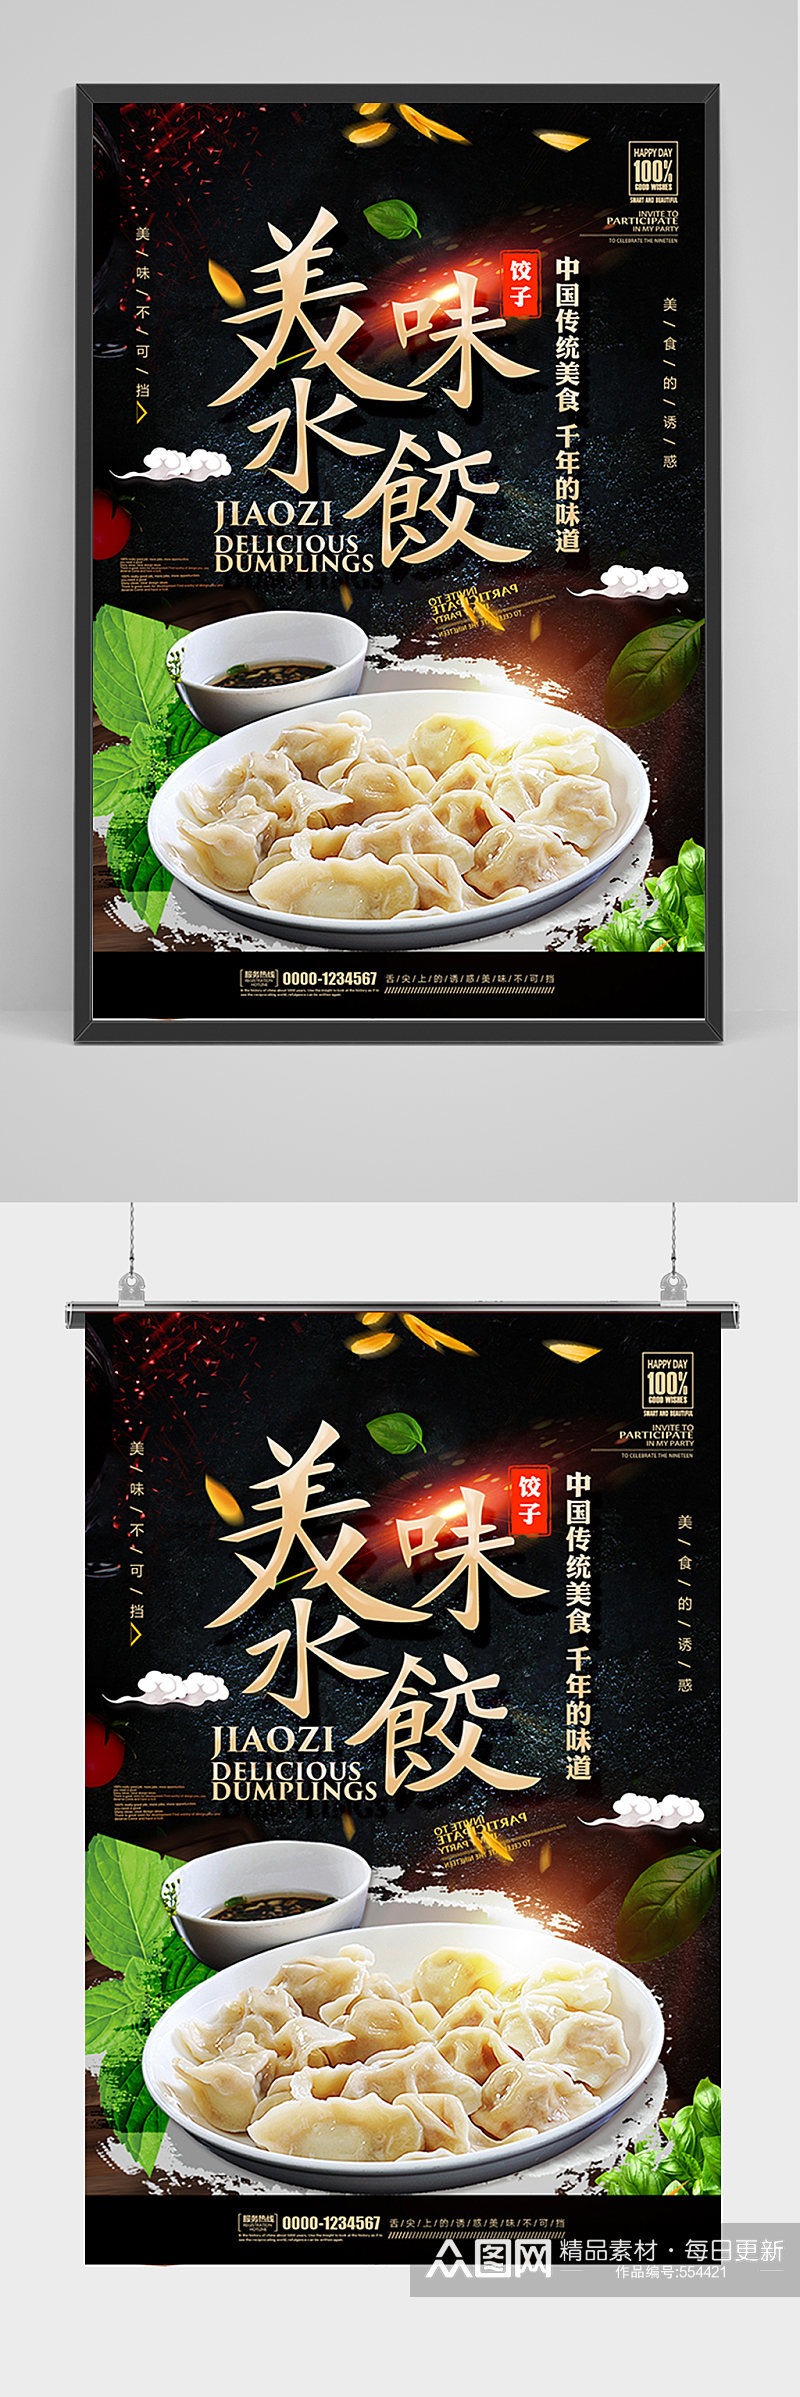 黑色美食美味水饺海报素材